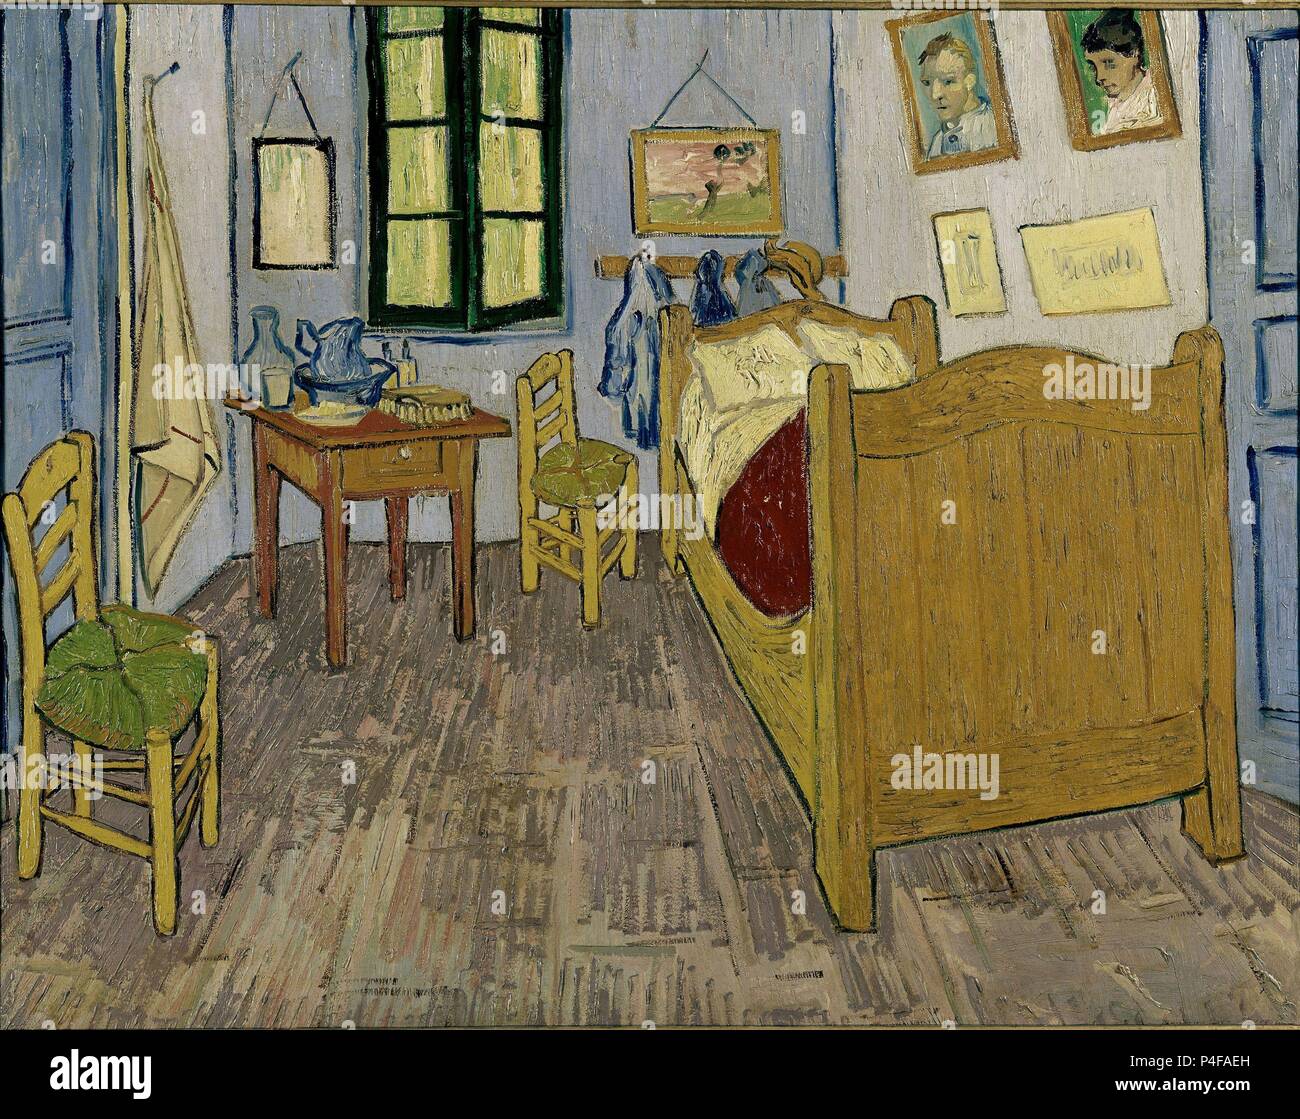 Niederländische Schule. Van Goghs Schlafzimmer in Arles. 1889. Öl auf Leinwand (57 x 74 cm). Paris, Musée d'Orsay. Autor: Vincent van Gogh (1853-1890). Lage: Musee D'Orsay, Frankreich. Stockfoto